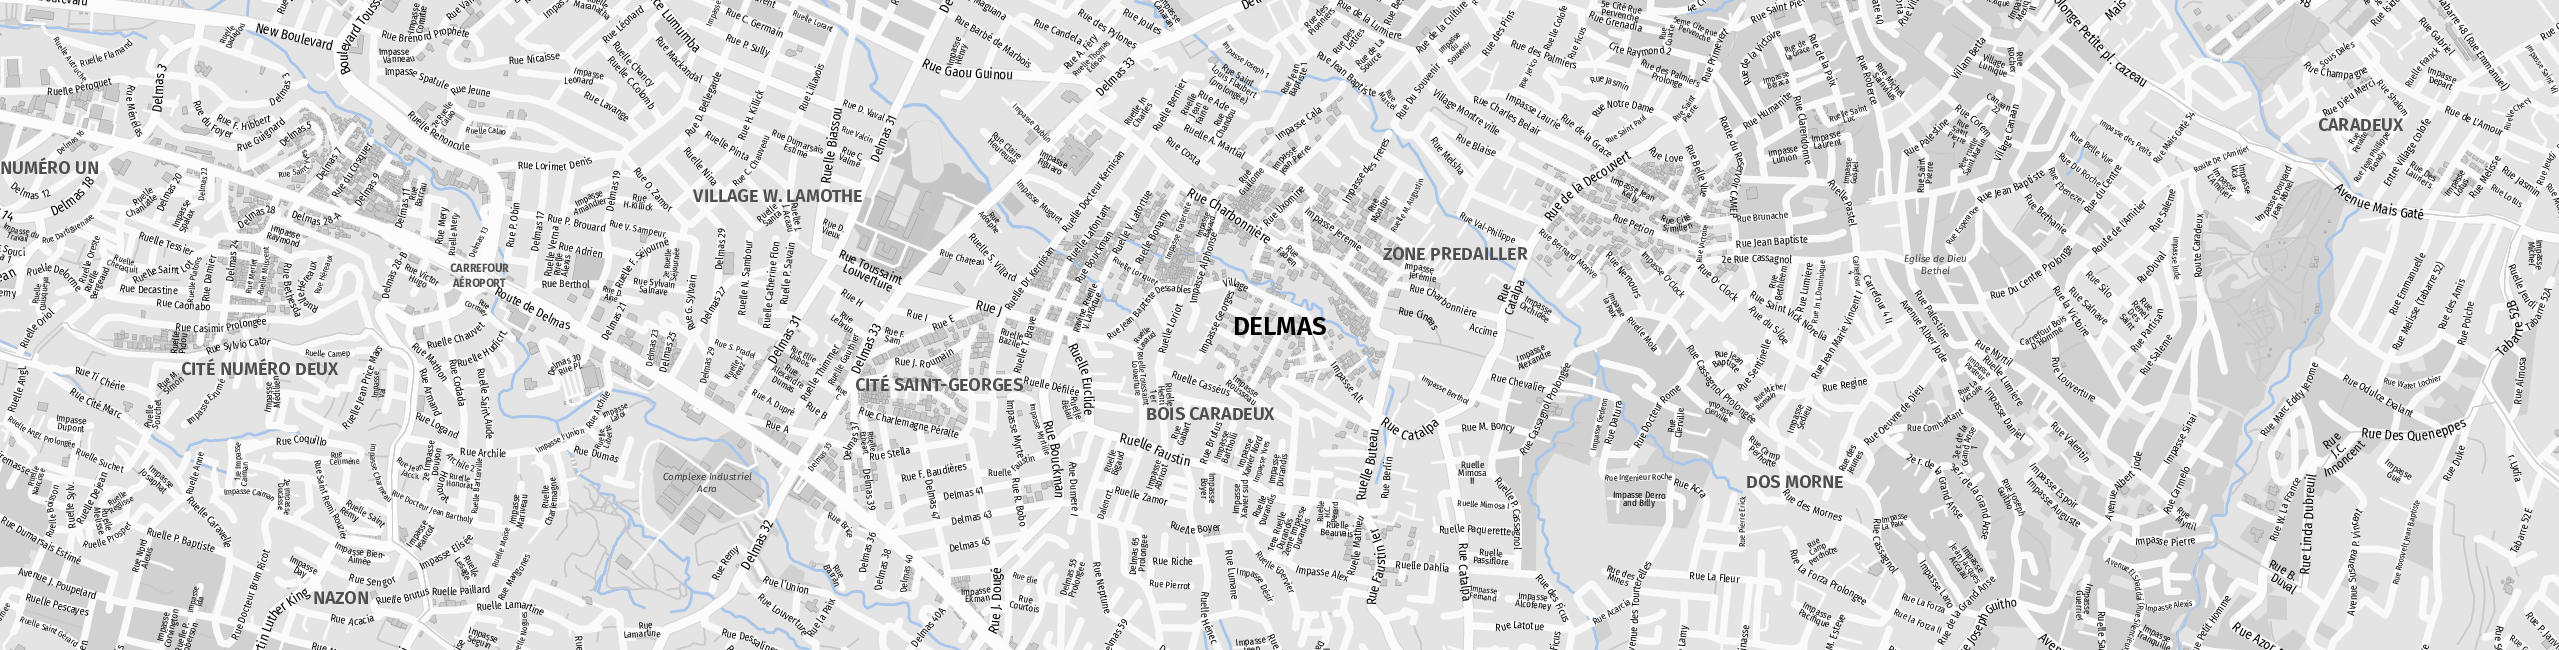 Stadtplan Delmas zum Downloaden.